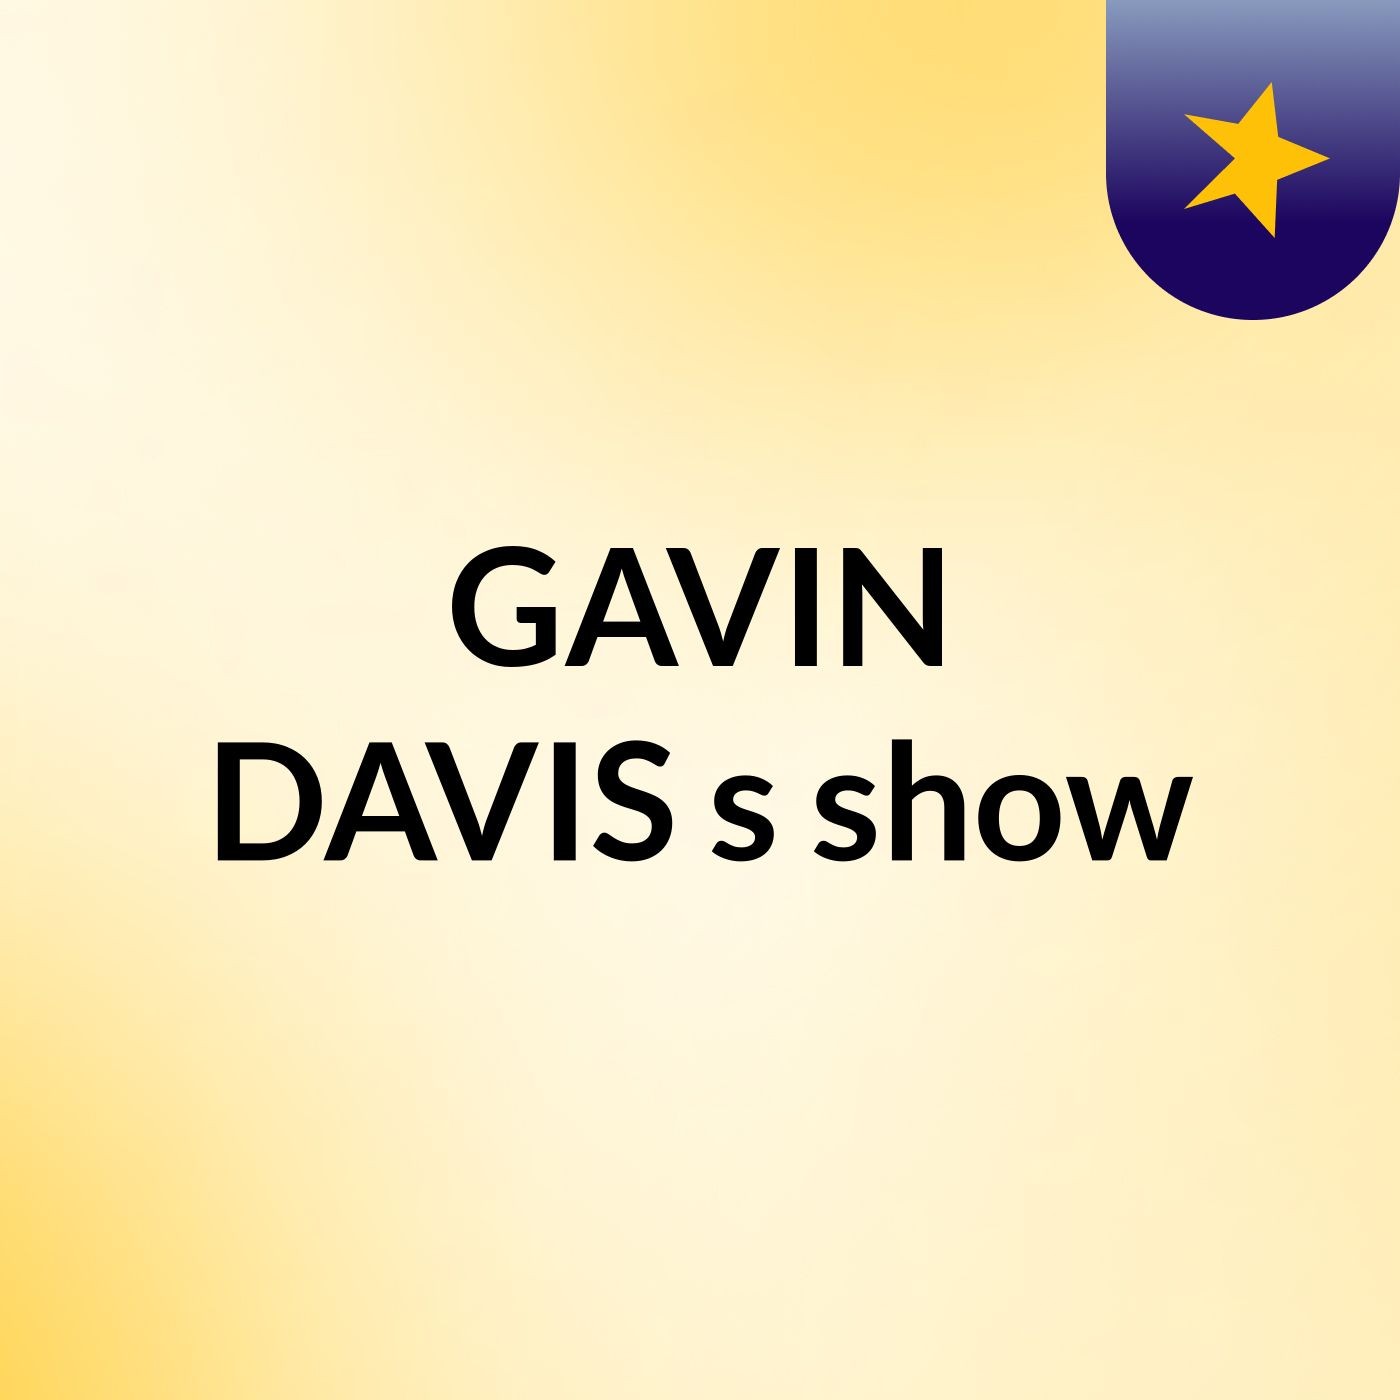 GAVIN DAVIS's show